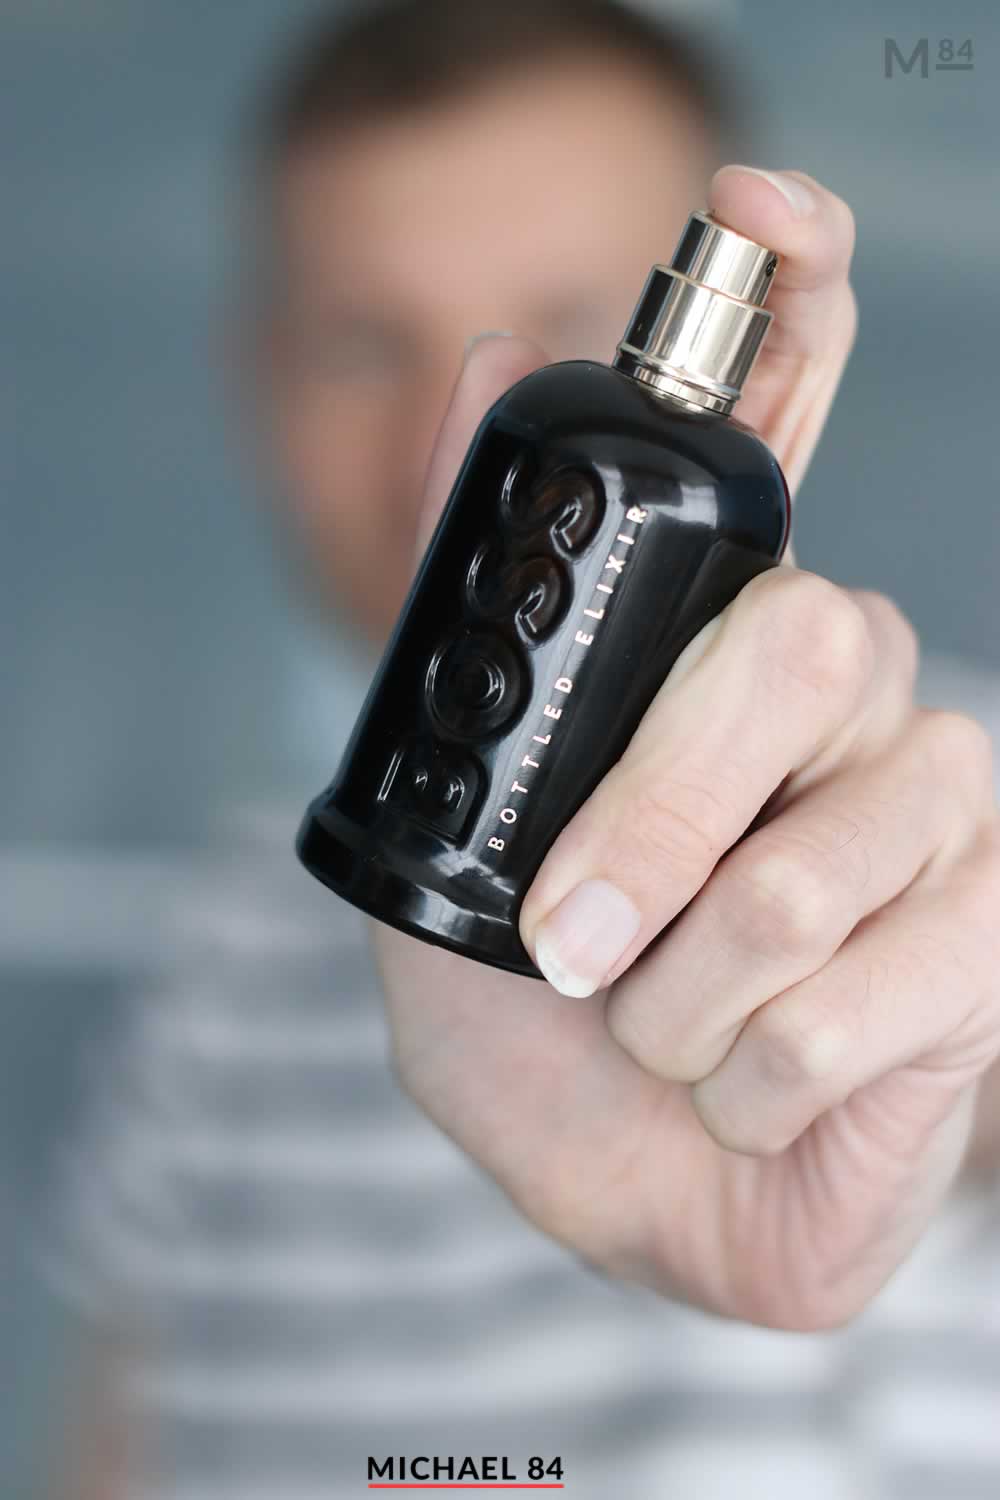 Hugo Boss Bottled Elixir Fragrance Review - Here's What It Smells